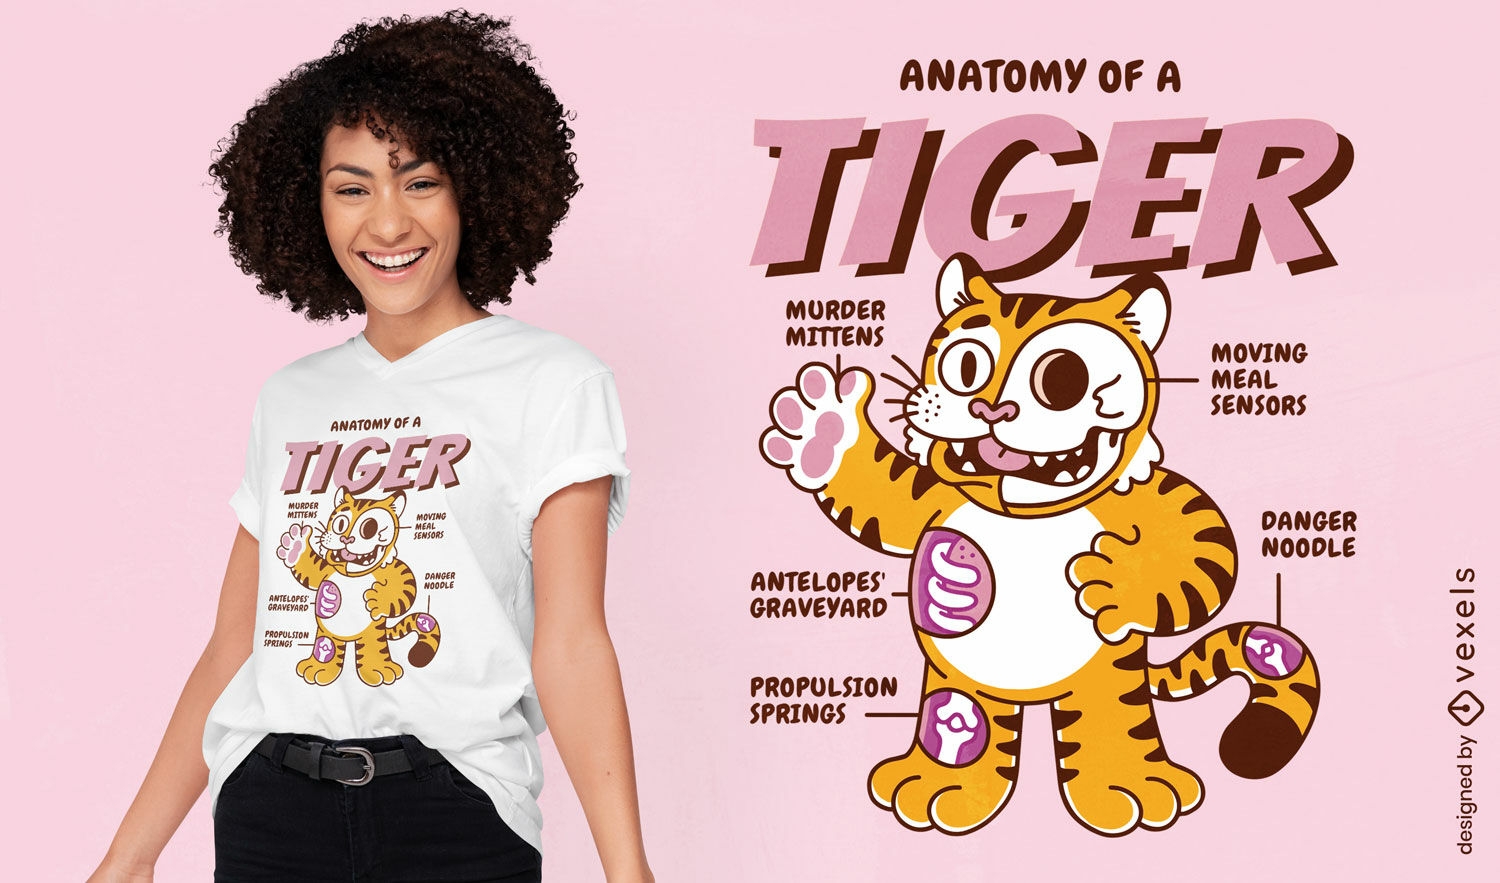 Diseño de camiseta de anatomía del tigre.